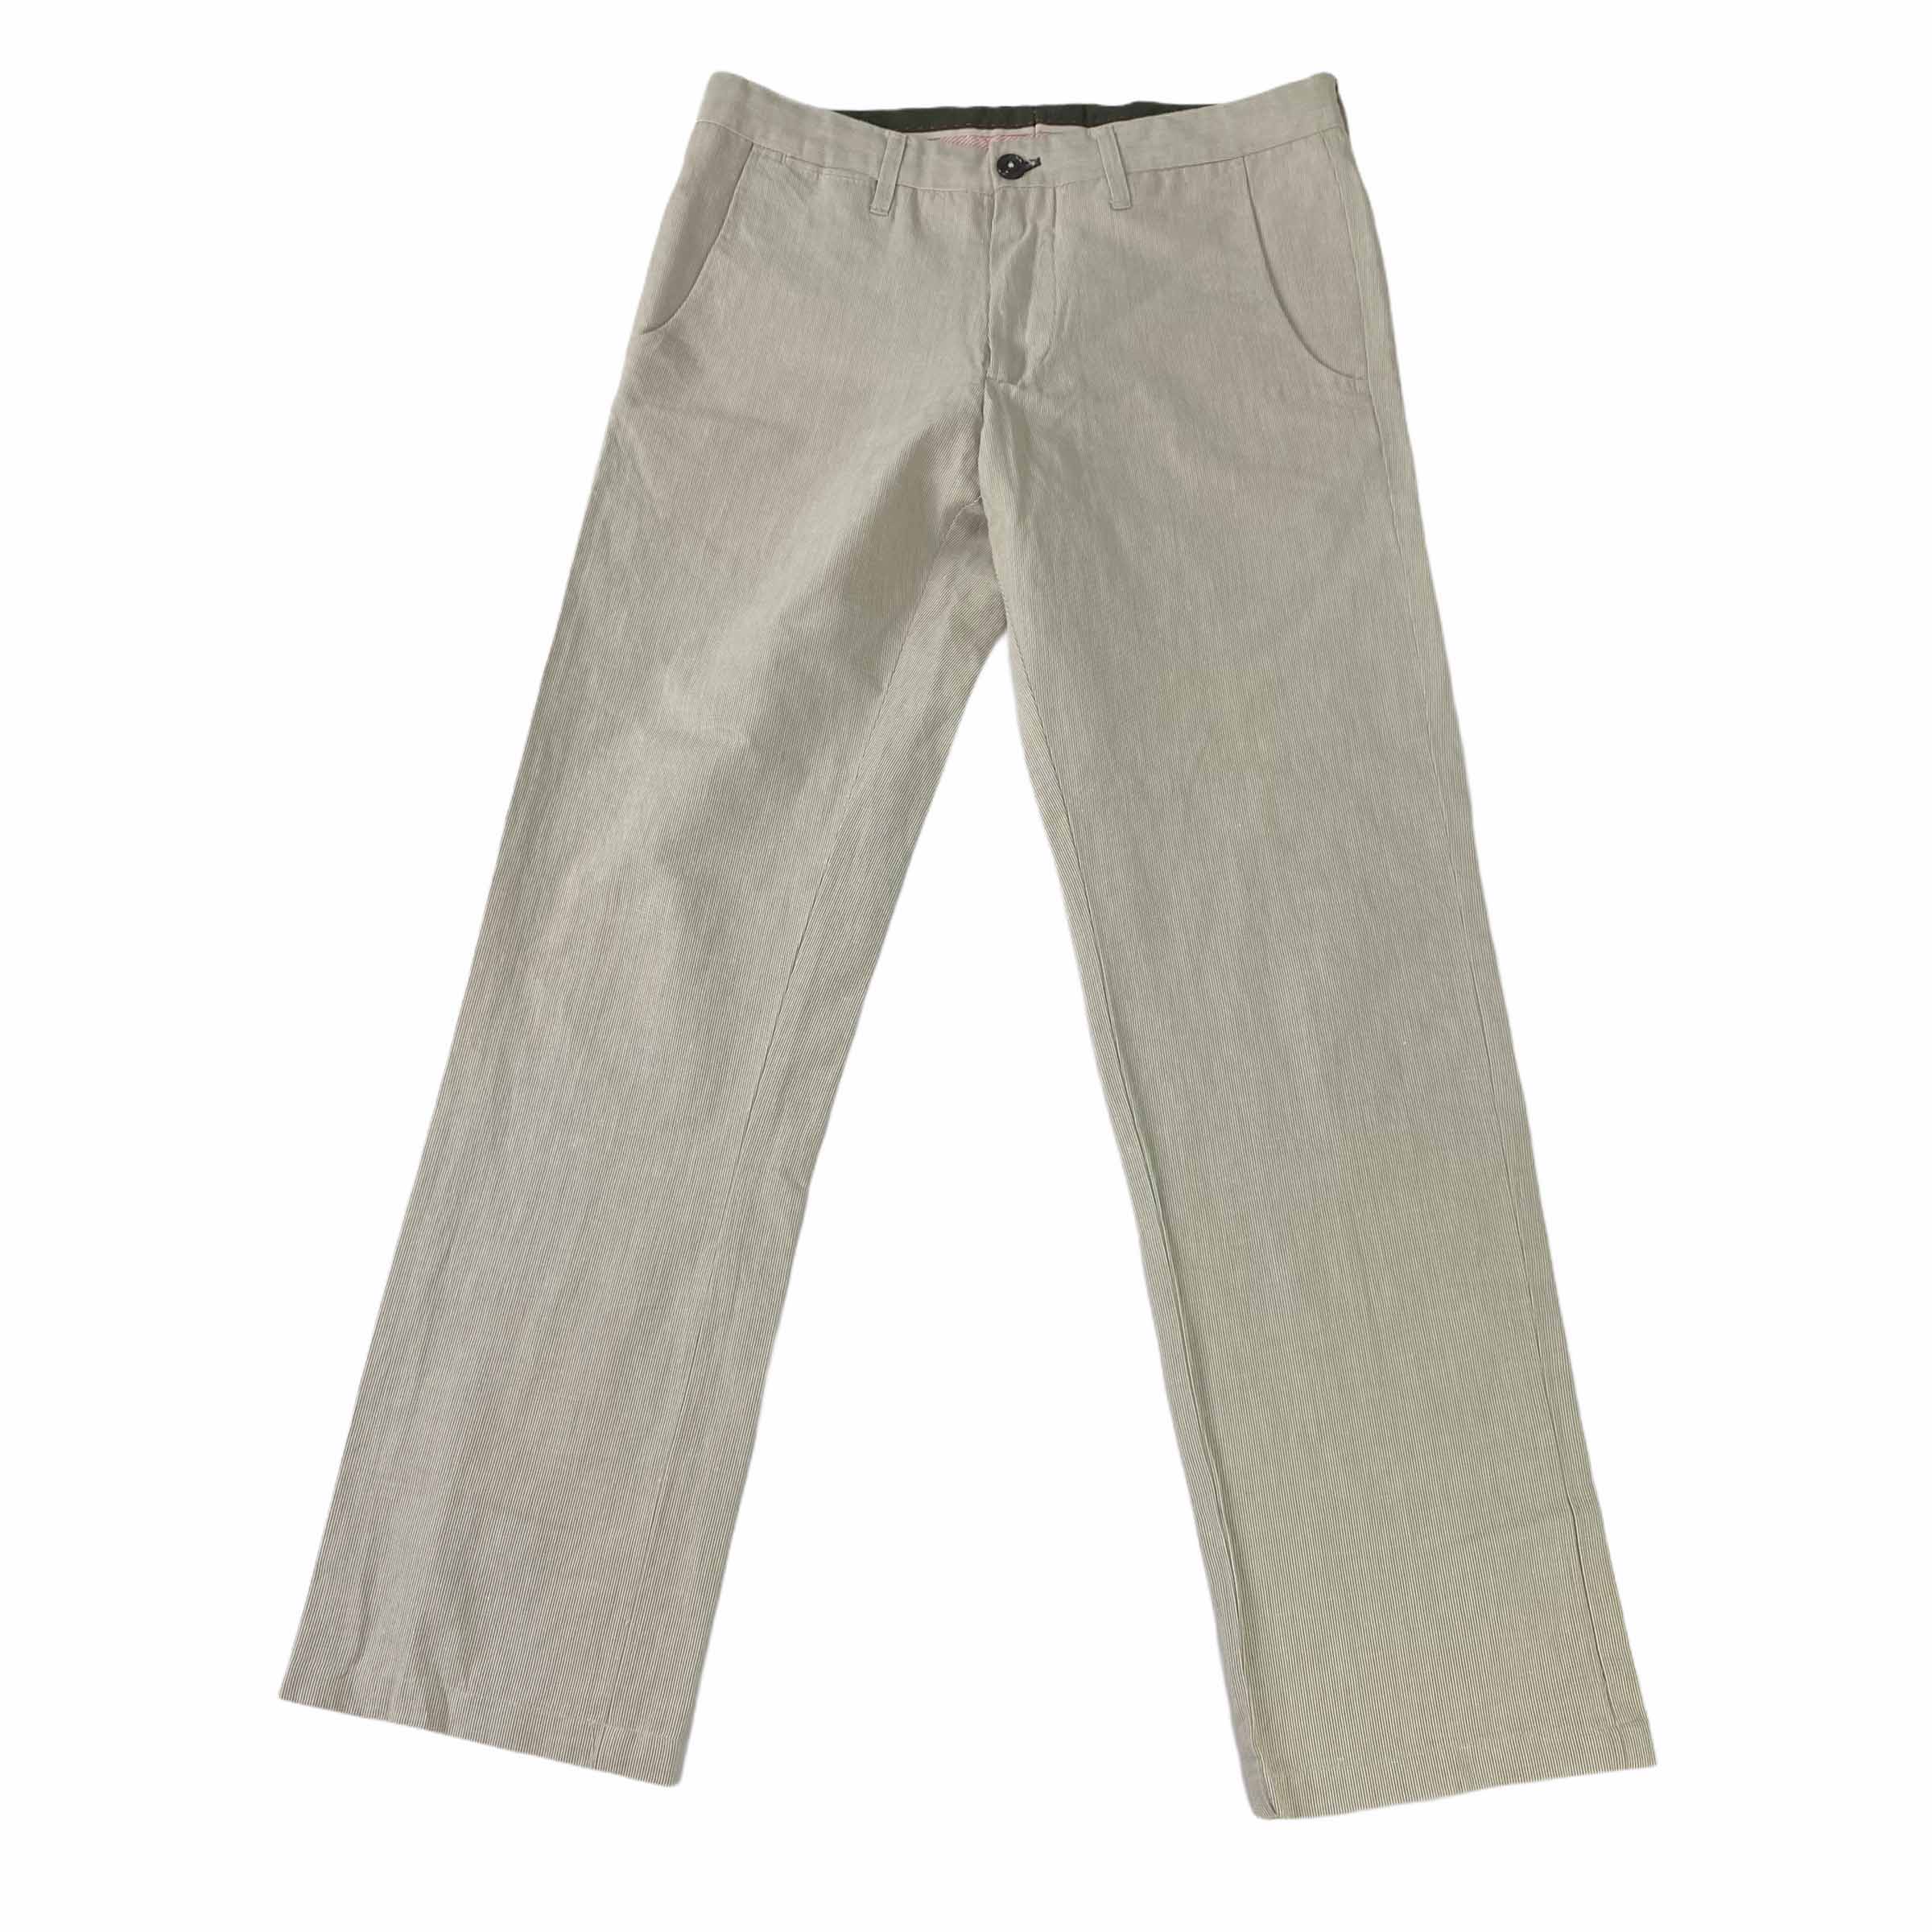 [Zara] Beige Linen Pants - Size 30